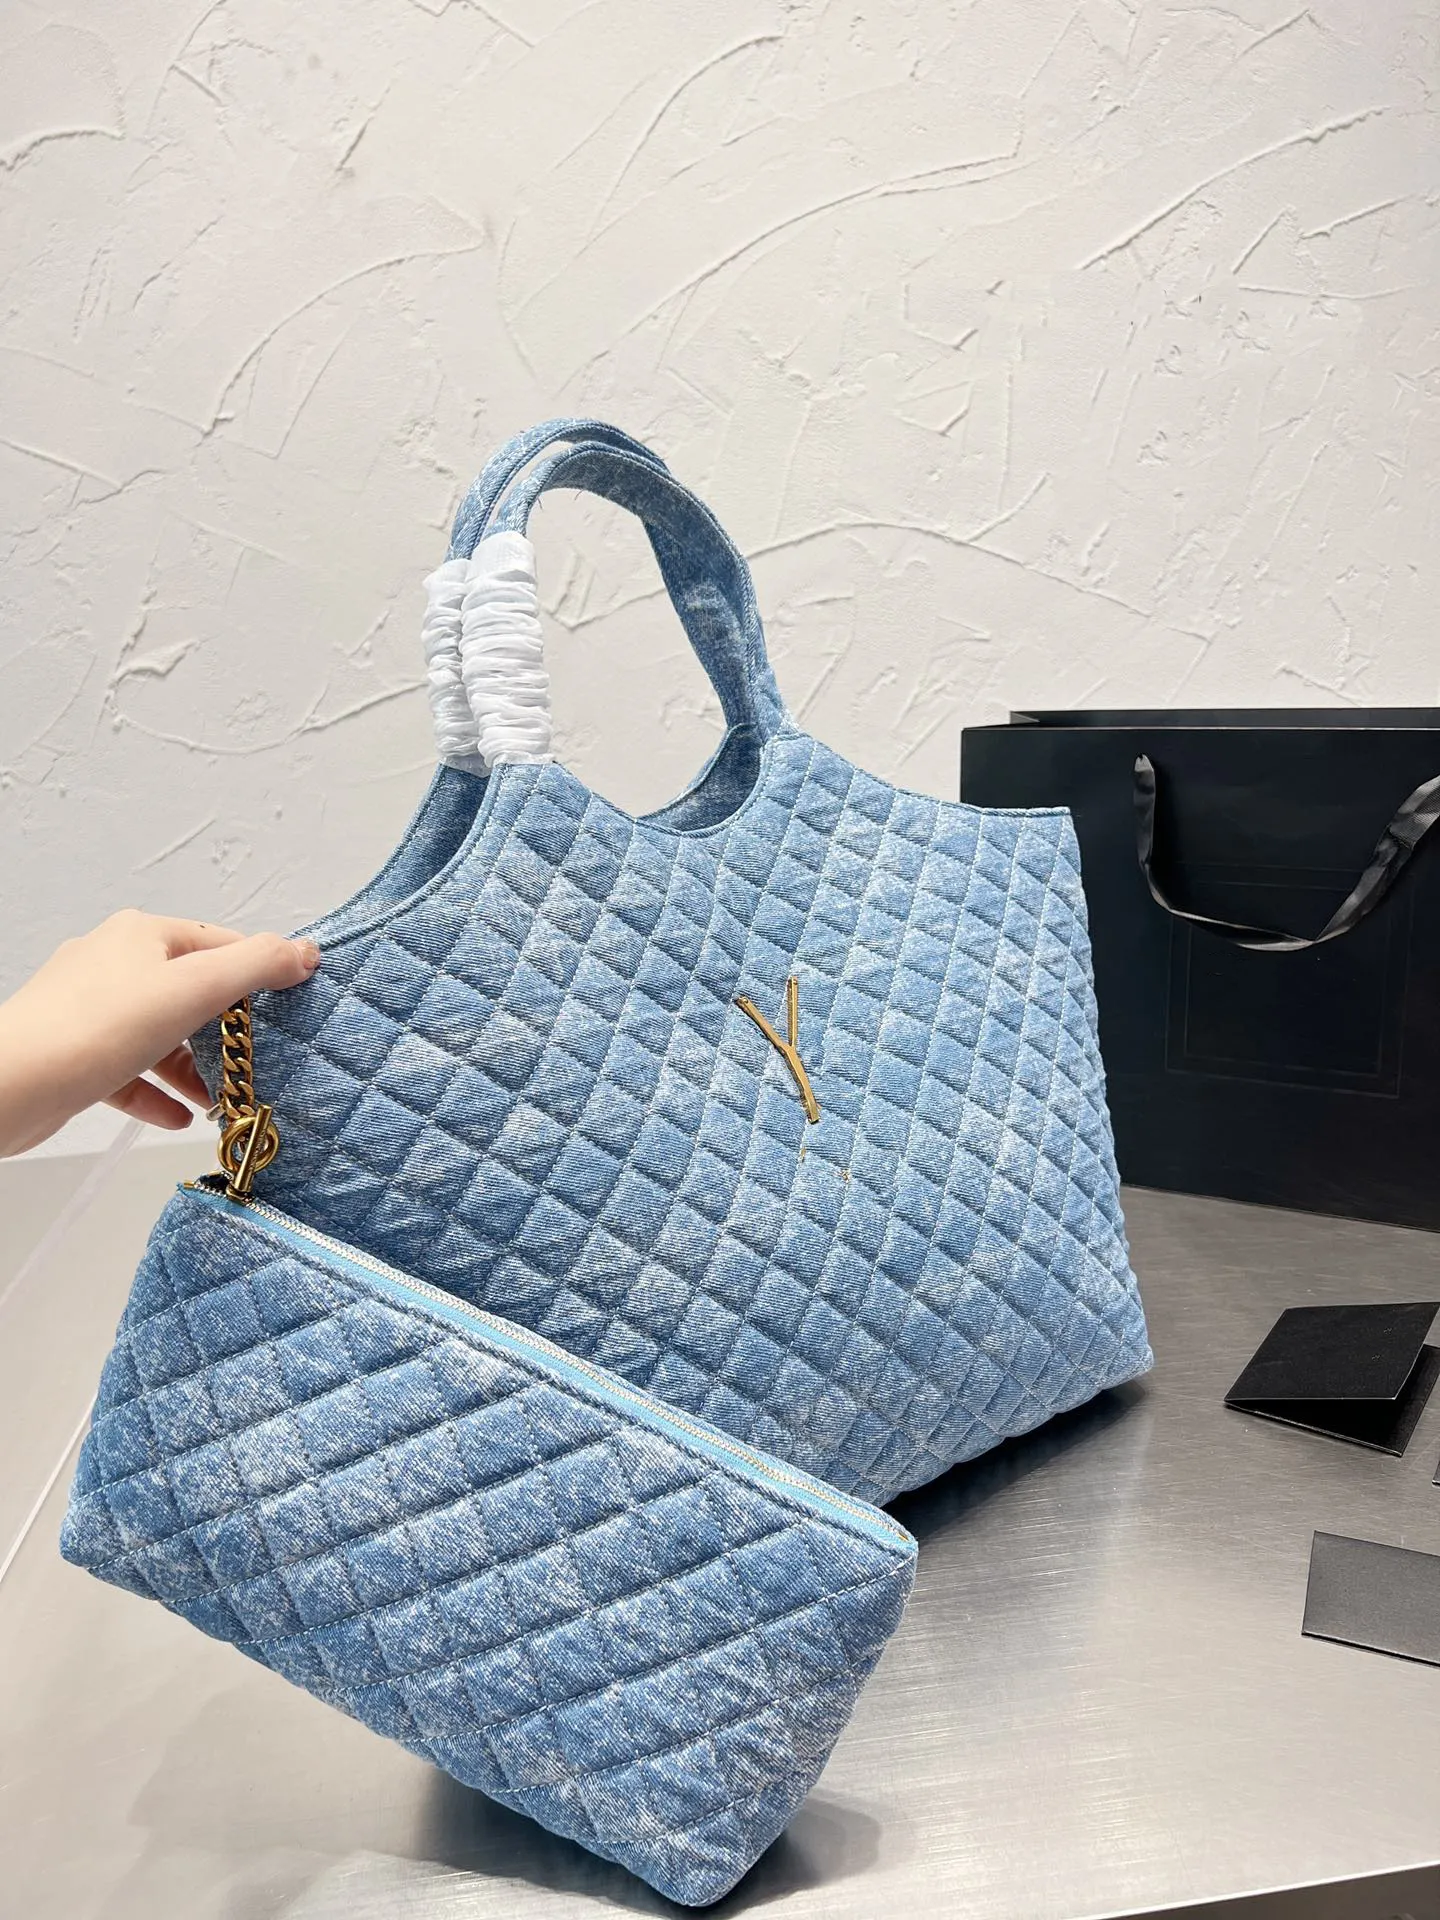 مصممي المملوءة المملوكة الملمس حقيبة الأزياء ICARE MAXI LEATHER LEATHER BAG MUNTIFUNCED حقائب اليد مع محفظة صغيرة مع Wallet260Q